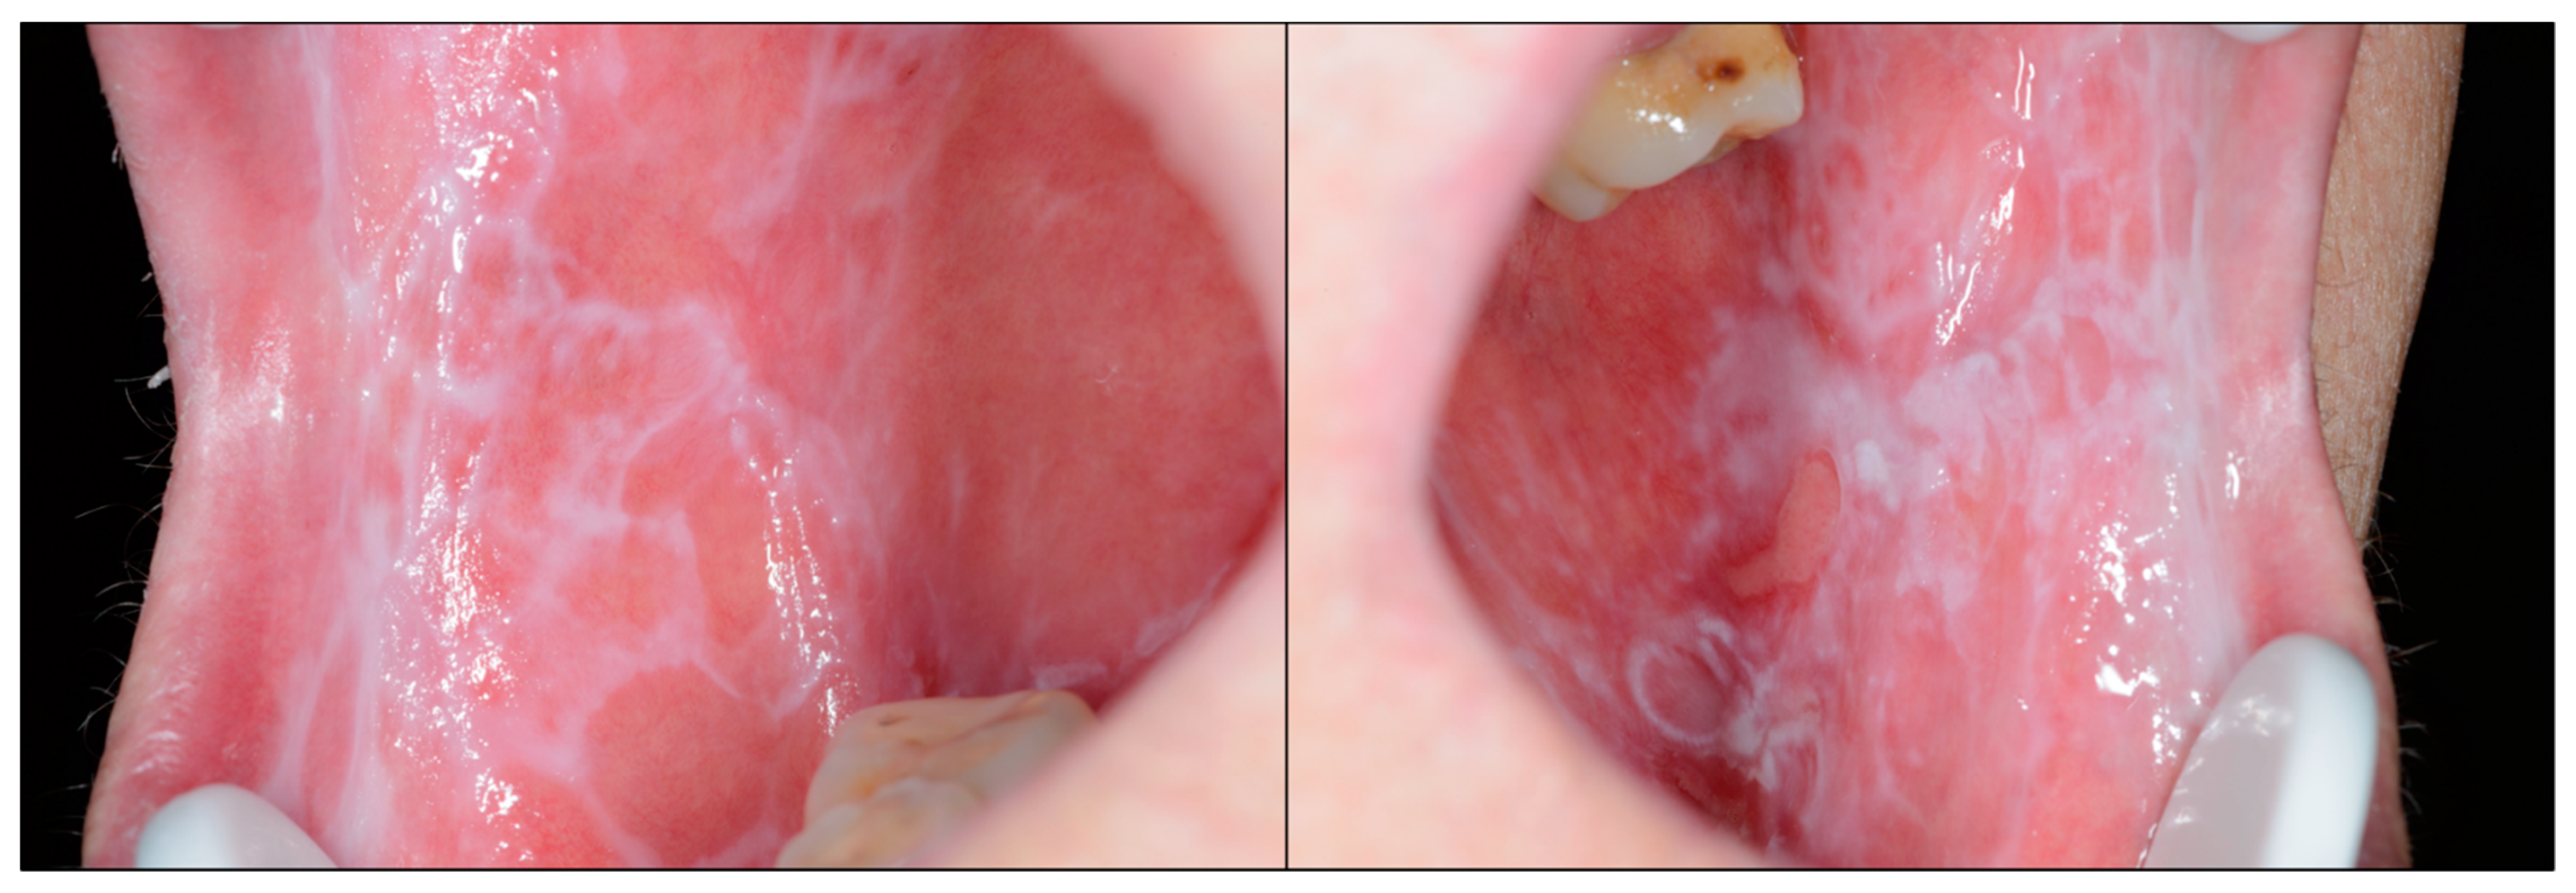 lichen planus mouth lesions